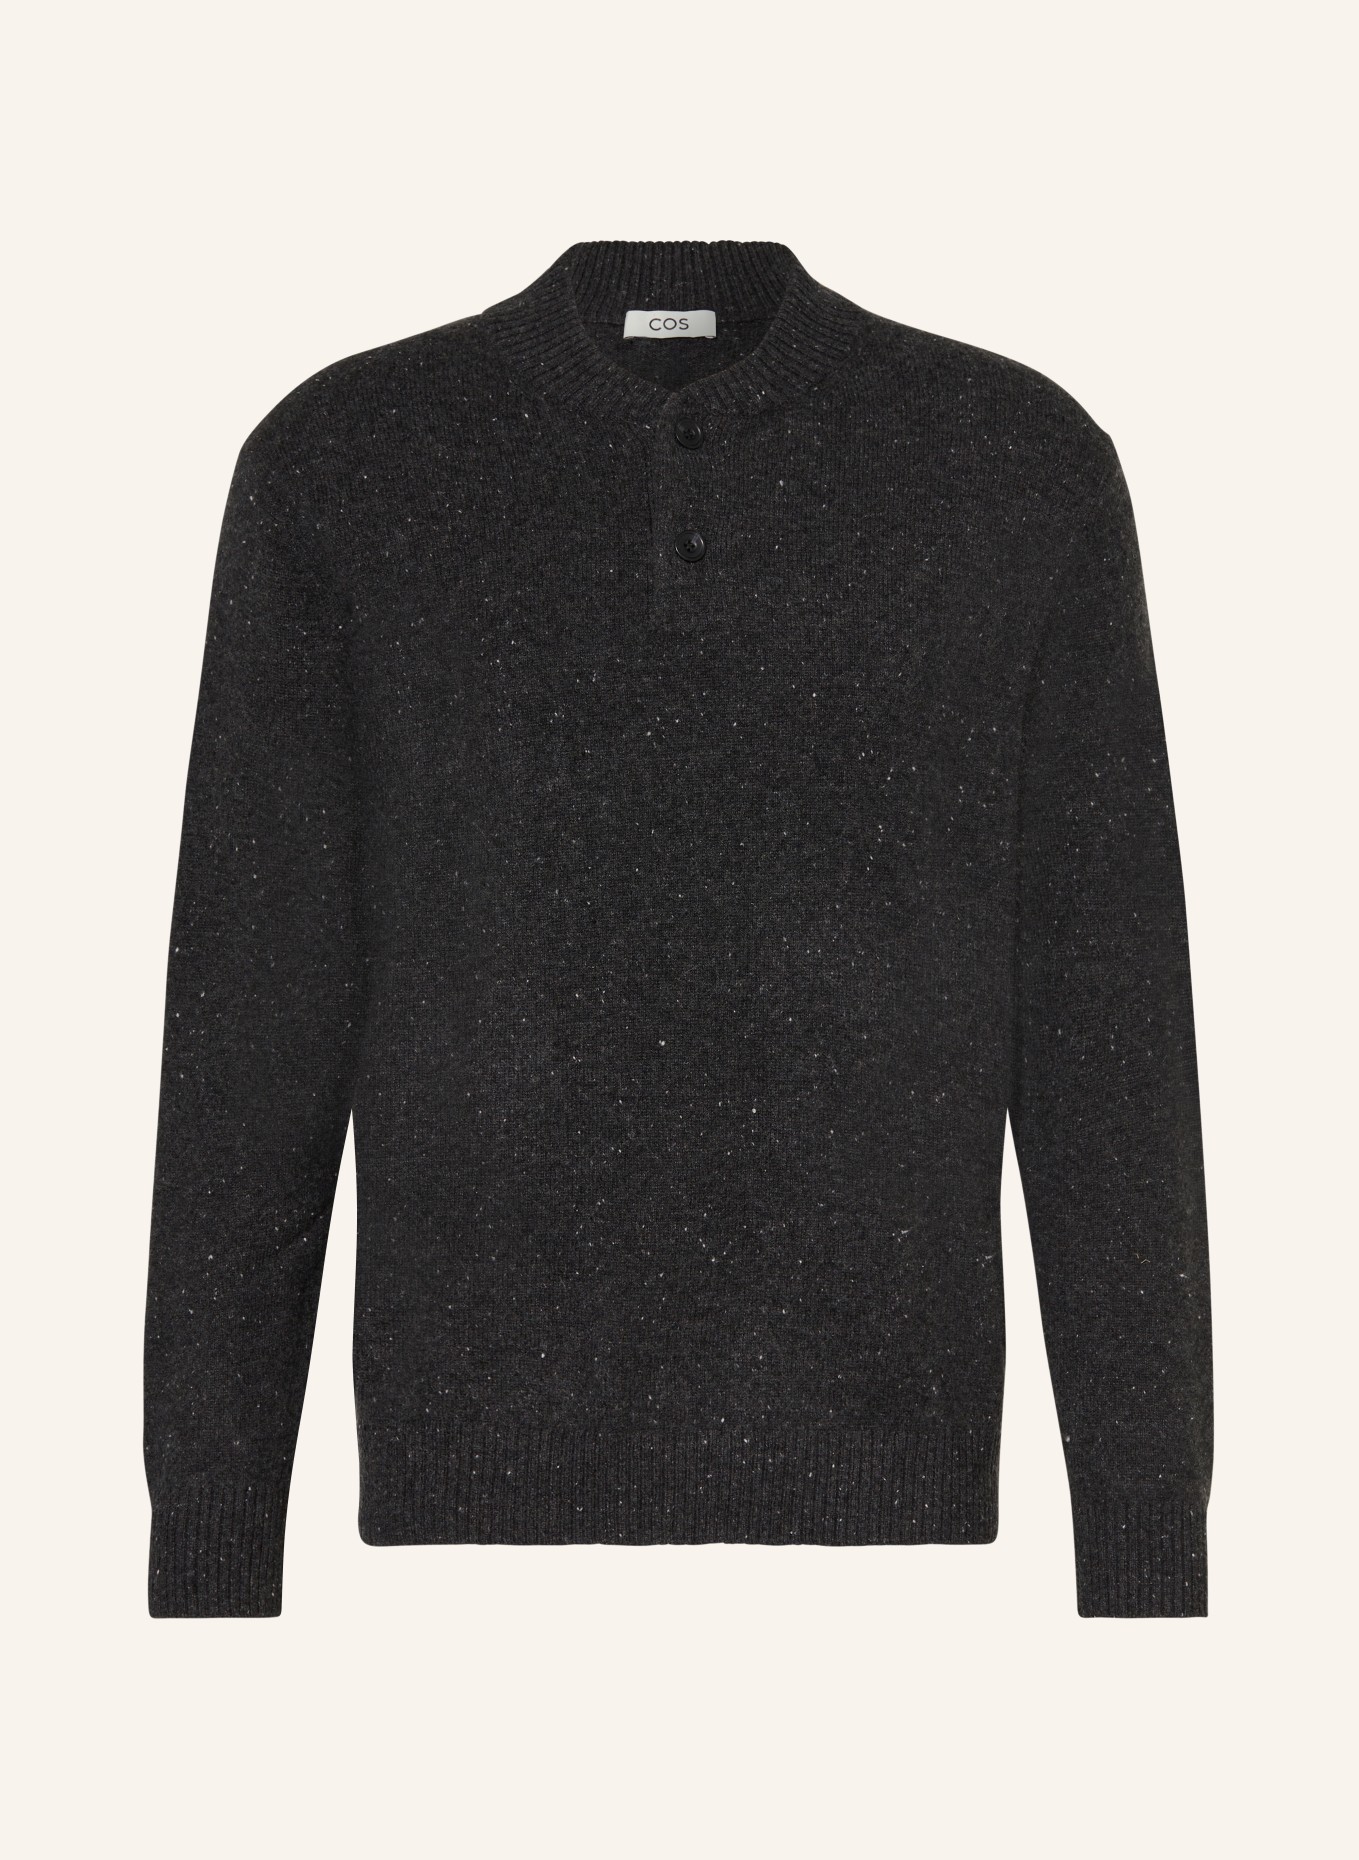 COS Cashmere-Pullover, Farbe: DUNKELGRAU (Bild 1)